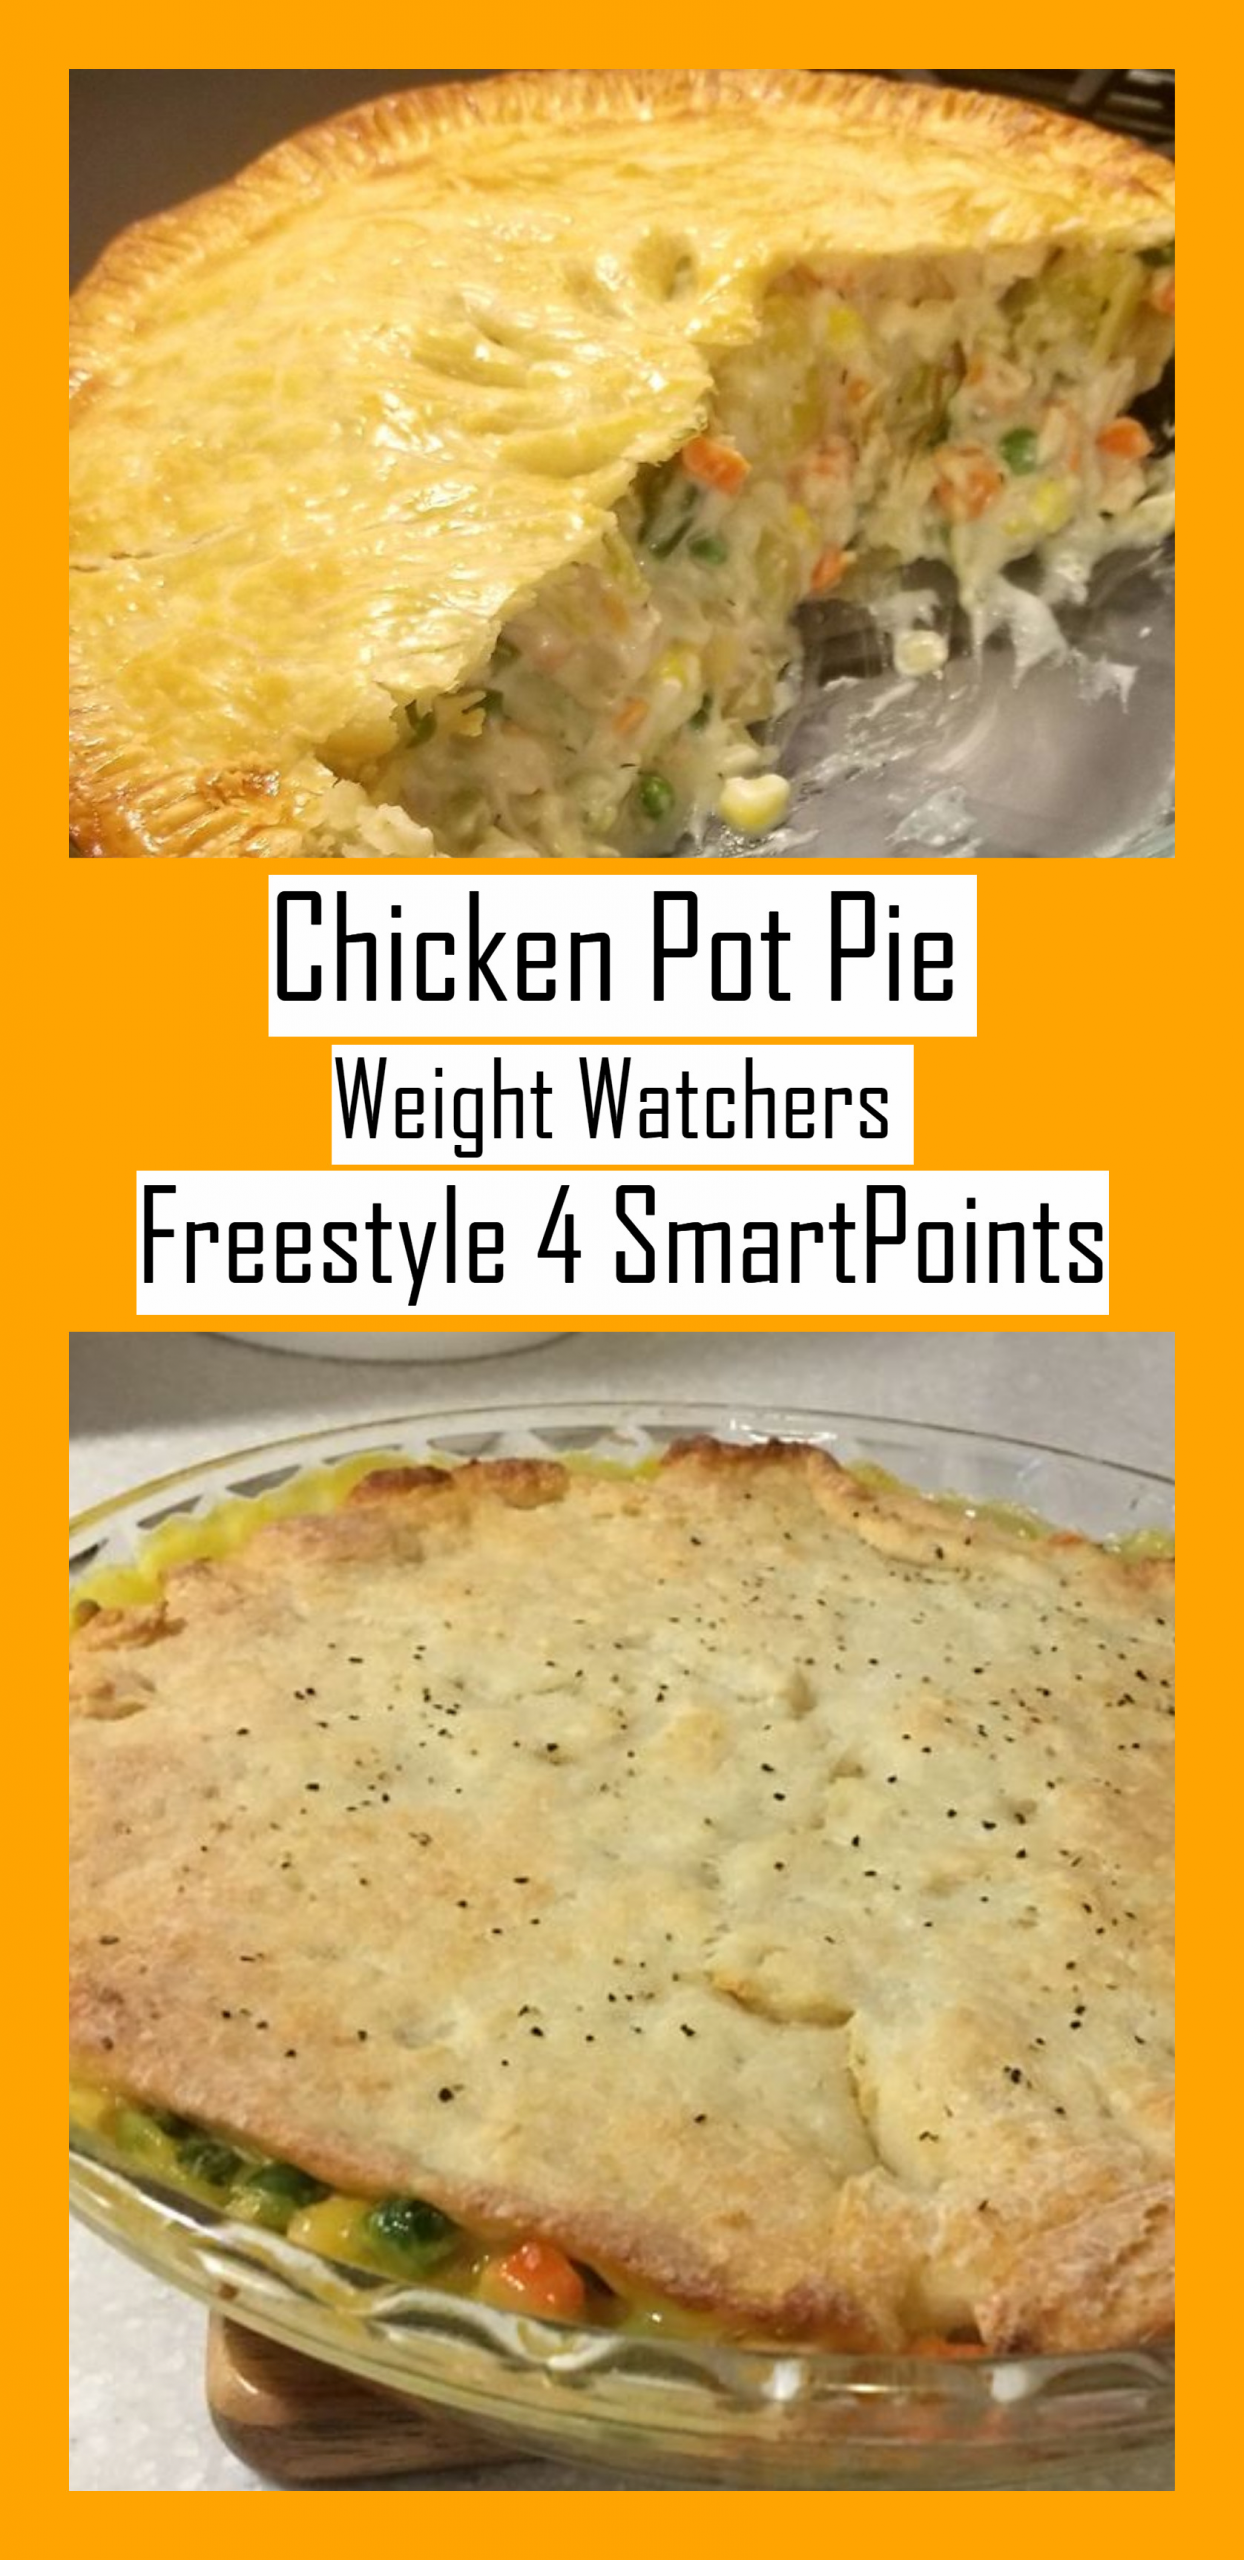 Healthy Chicken Pot Pie Recipe Weight Watchers
 Chicken Pot Pie Weight Watchers Freestyle 4 SmartPoints